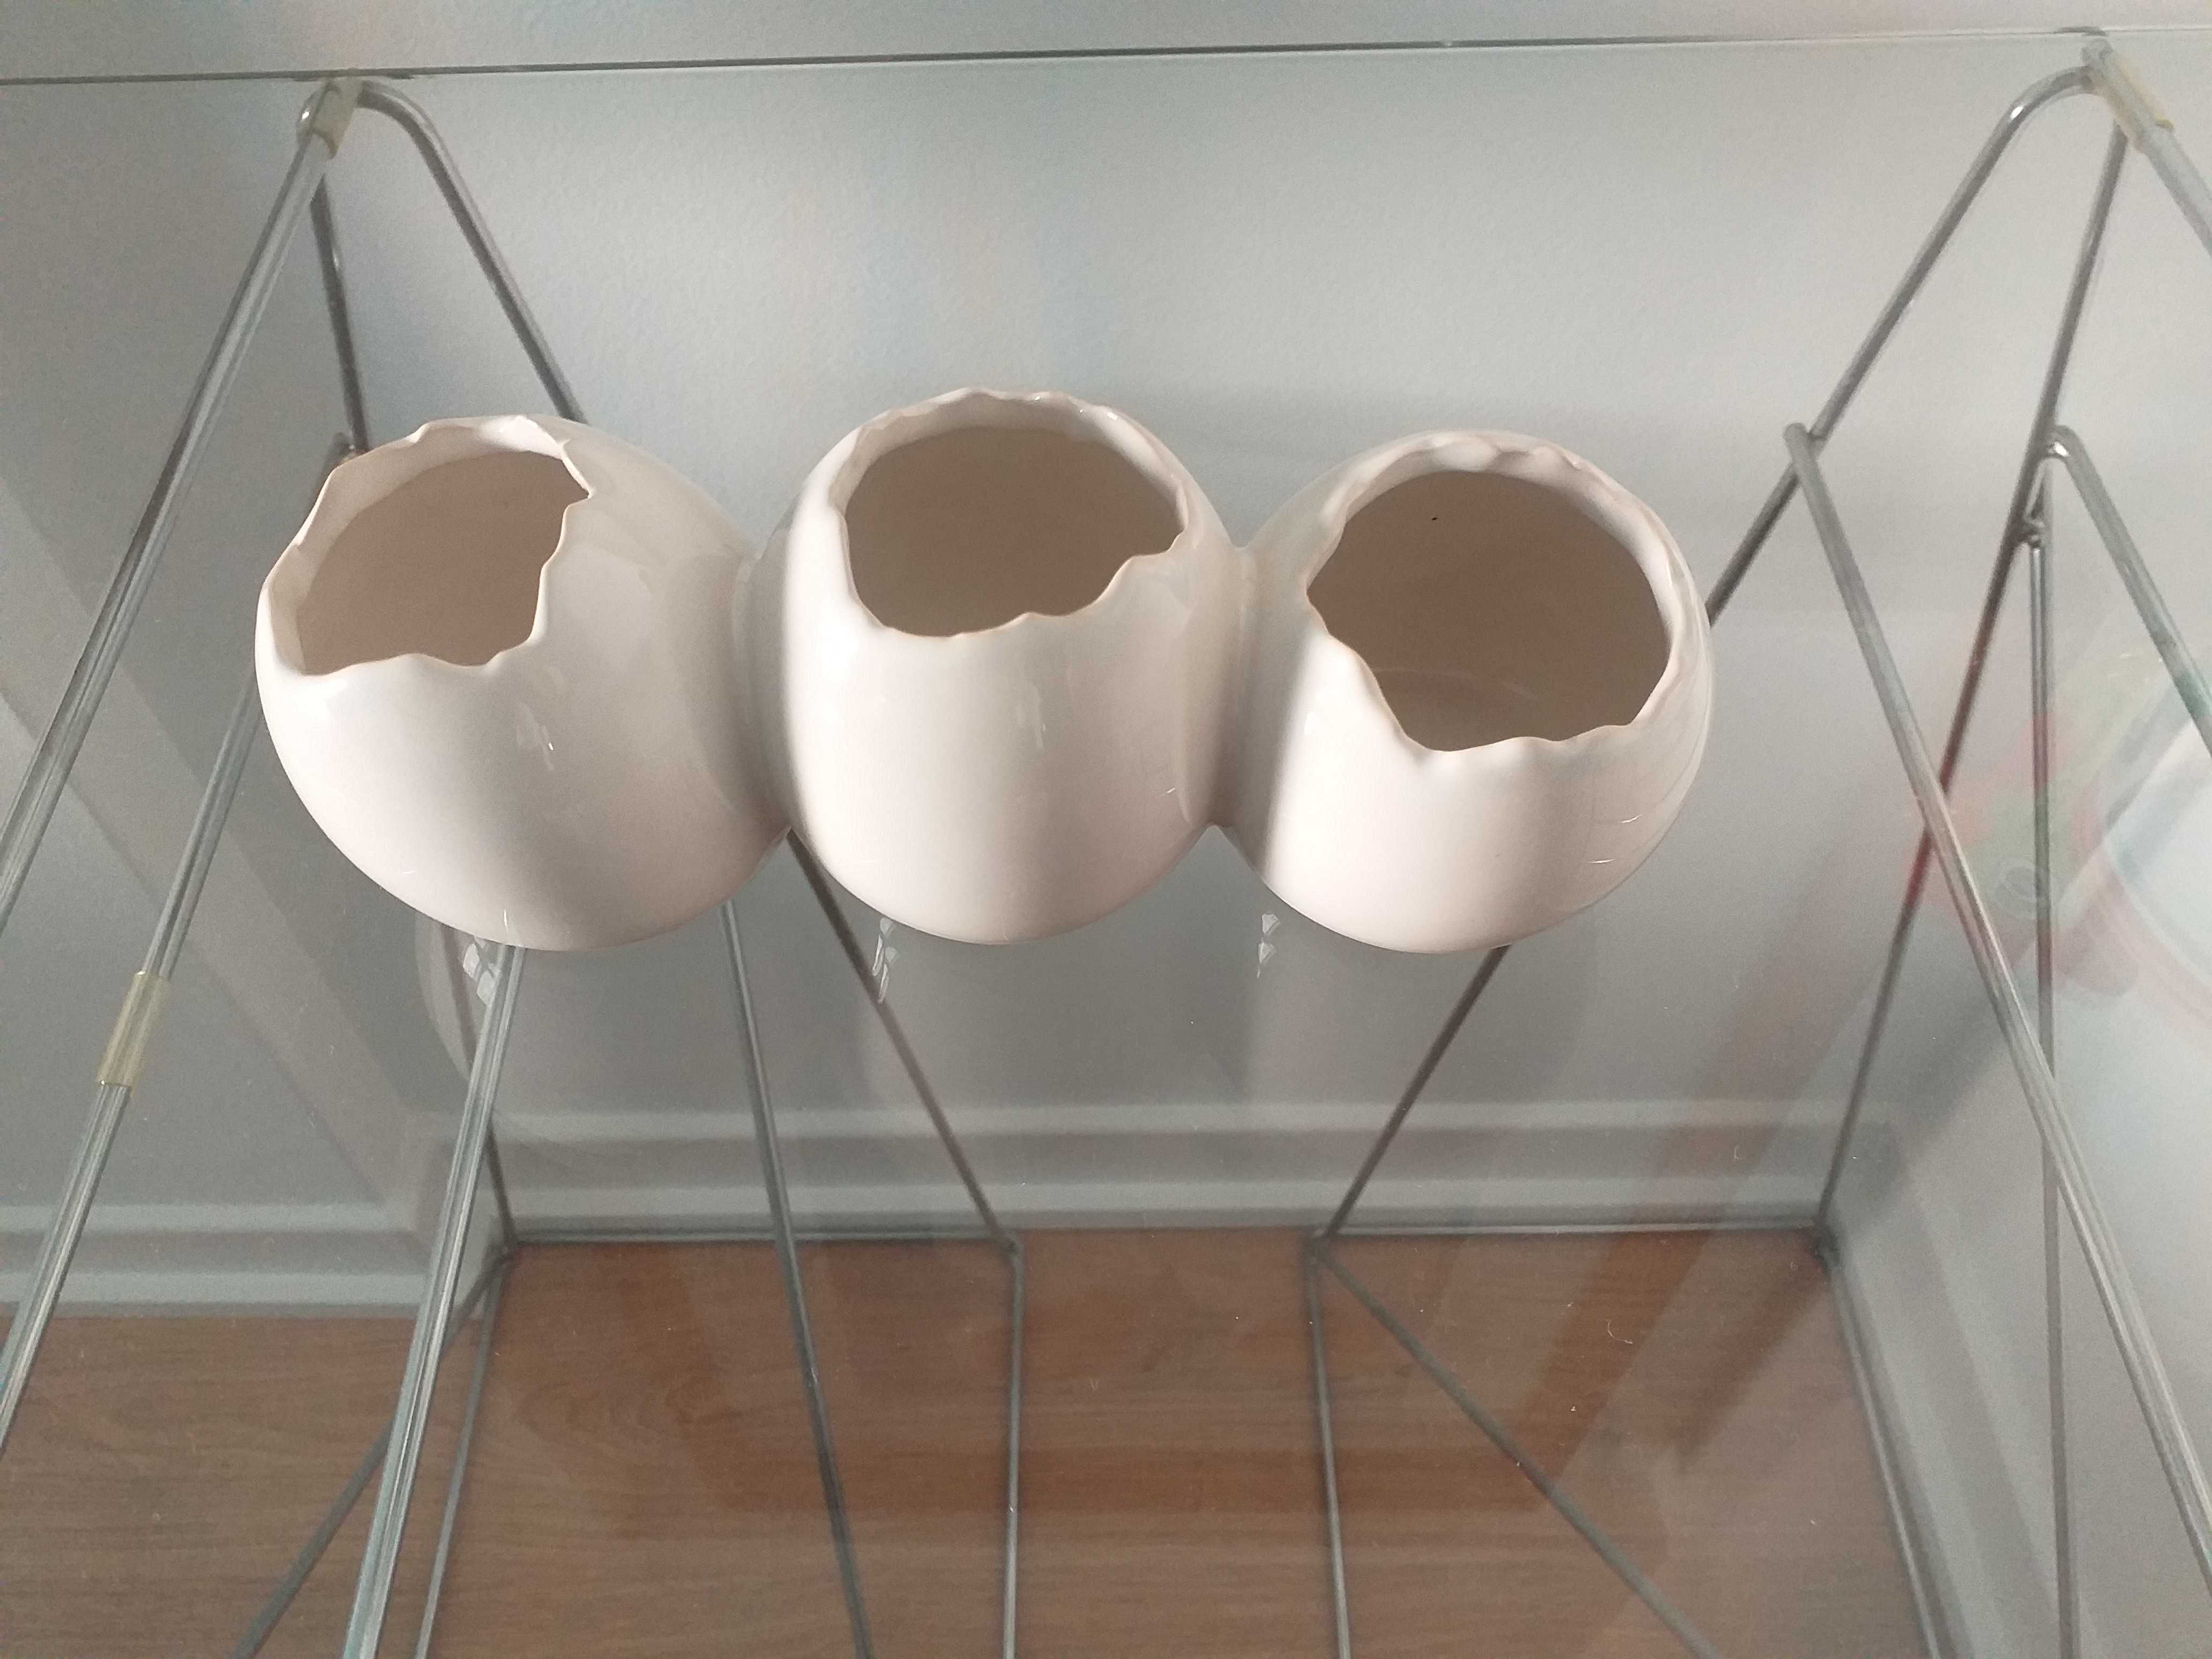 Porta-velas / base para ovos quentes em cerâmica NOVO